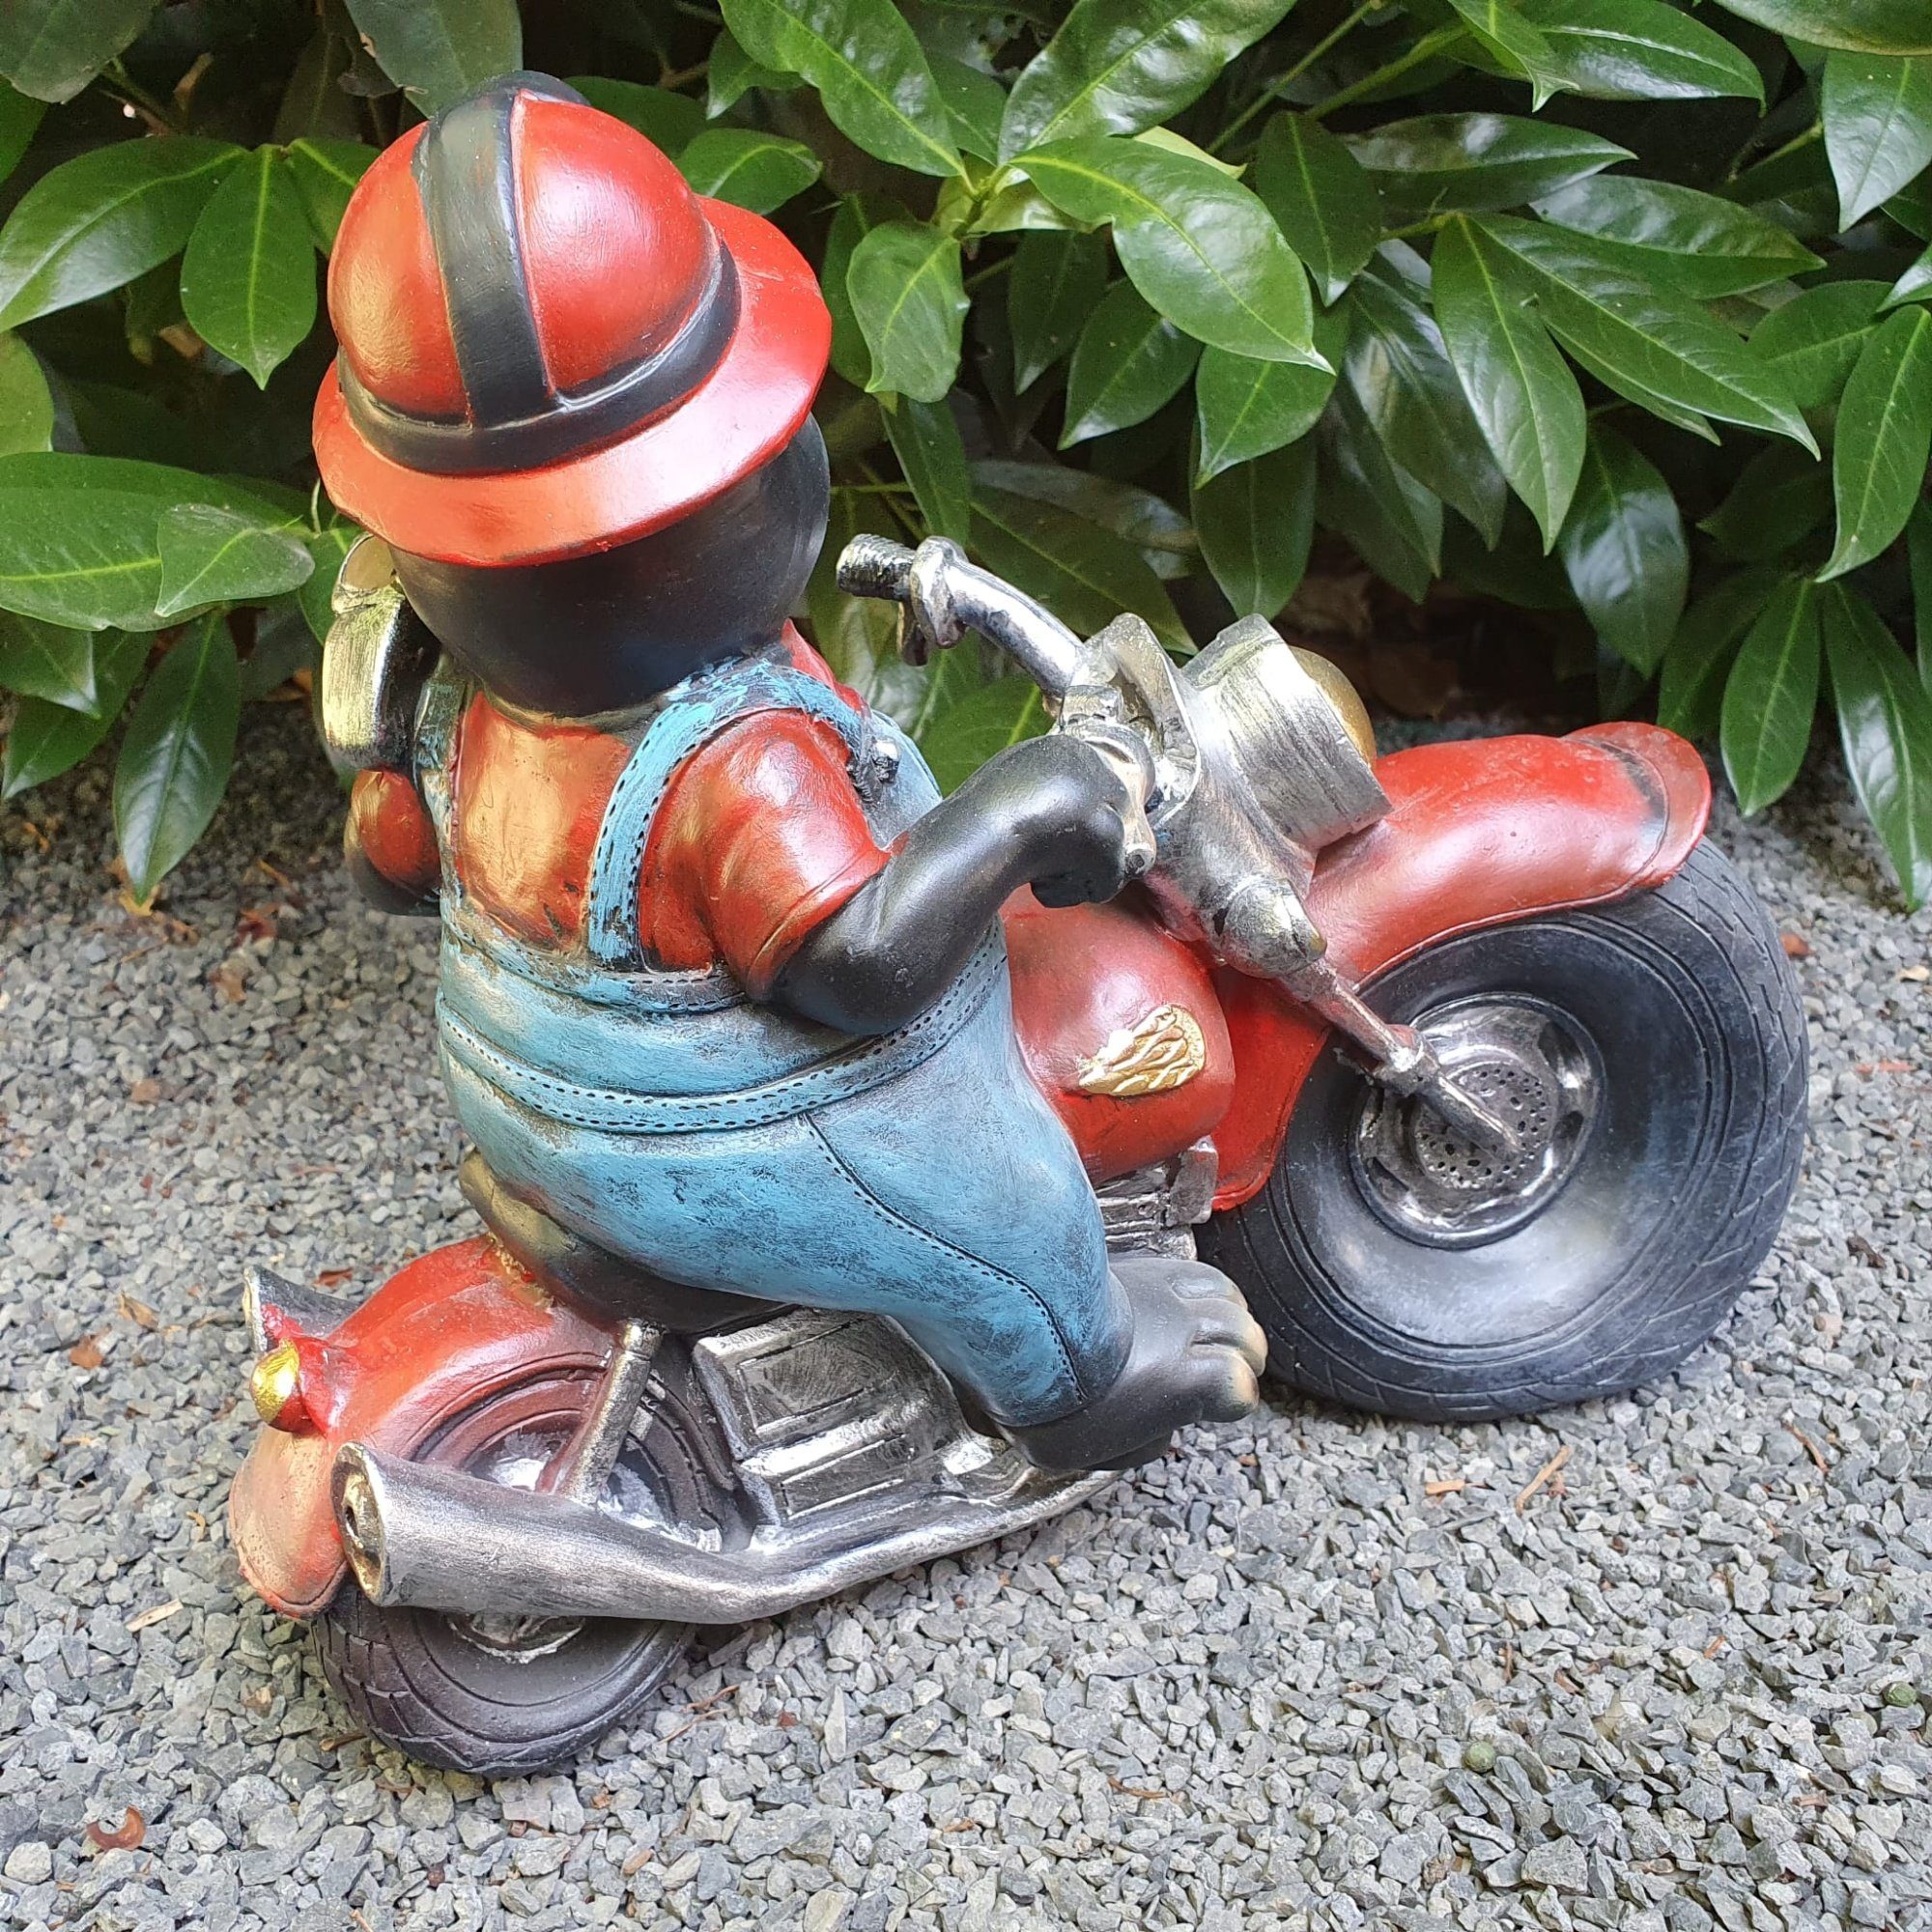 auf cm Gartenfigur 26 Figur Motorrad Aspinaworld Gartenfigur Maulwurf